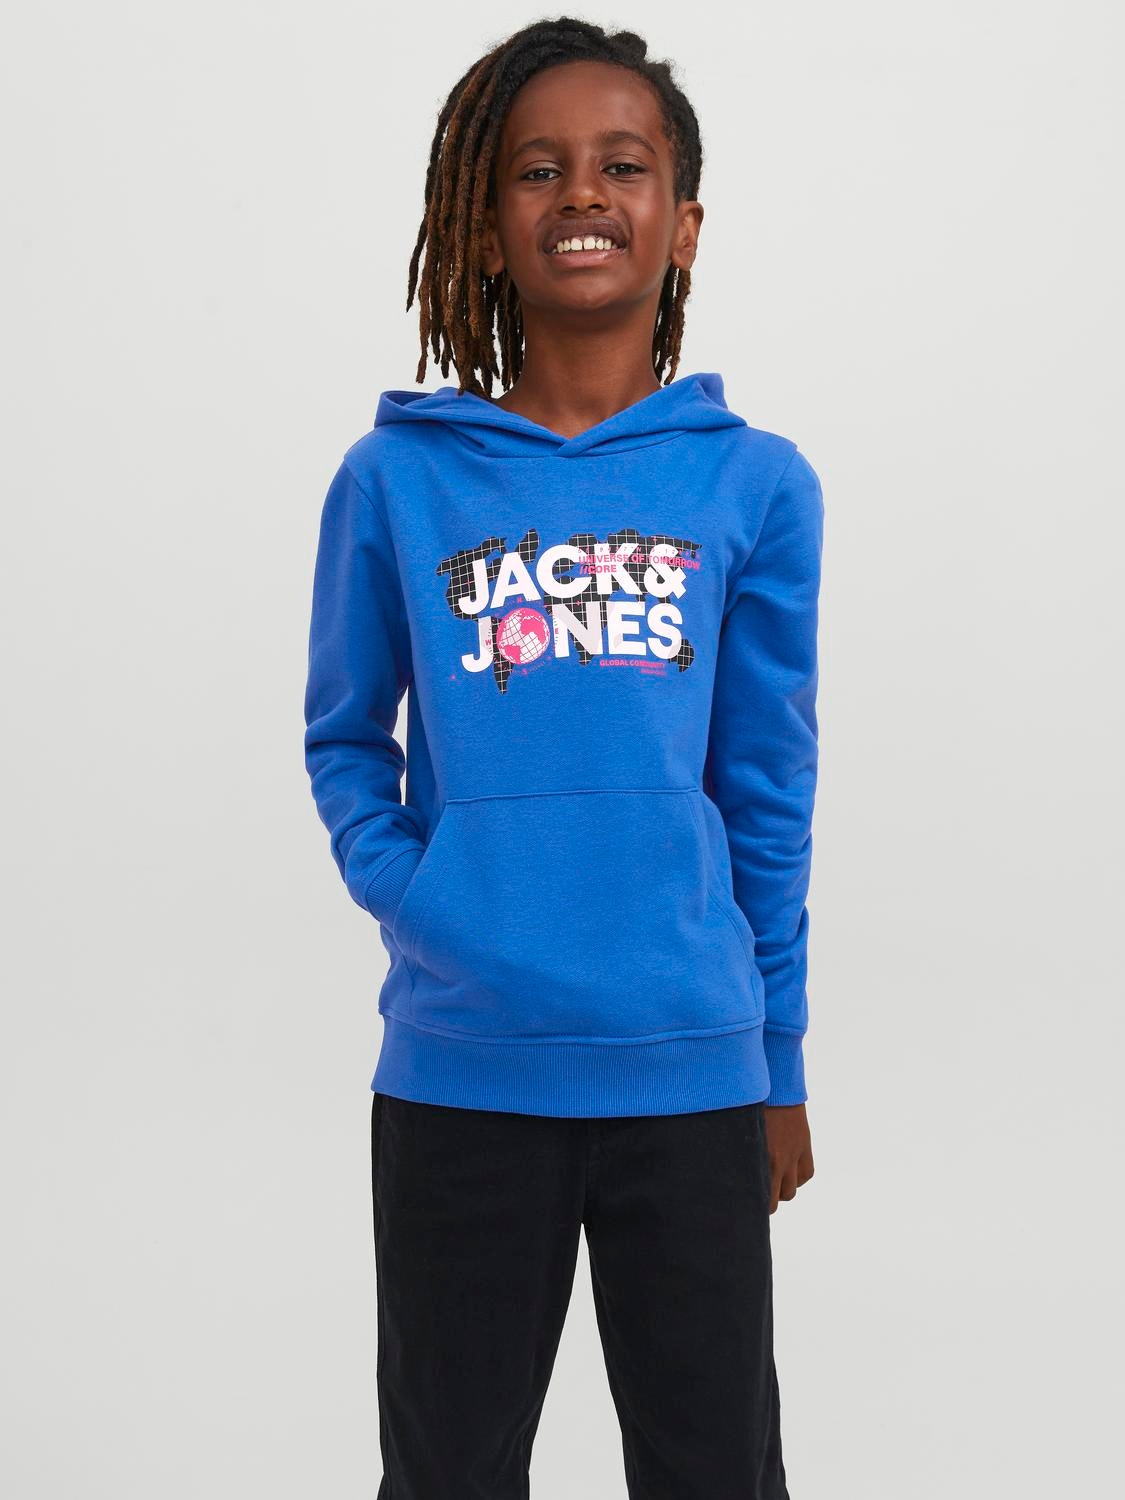 Jack & Jones Logo Hoodie For boys -Blue Iolite - 12241029